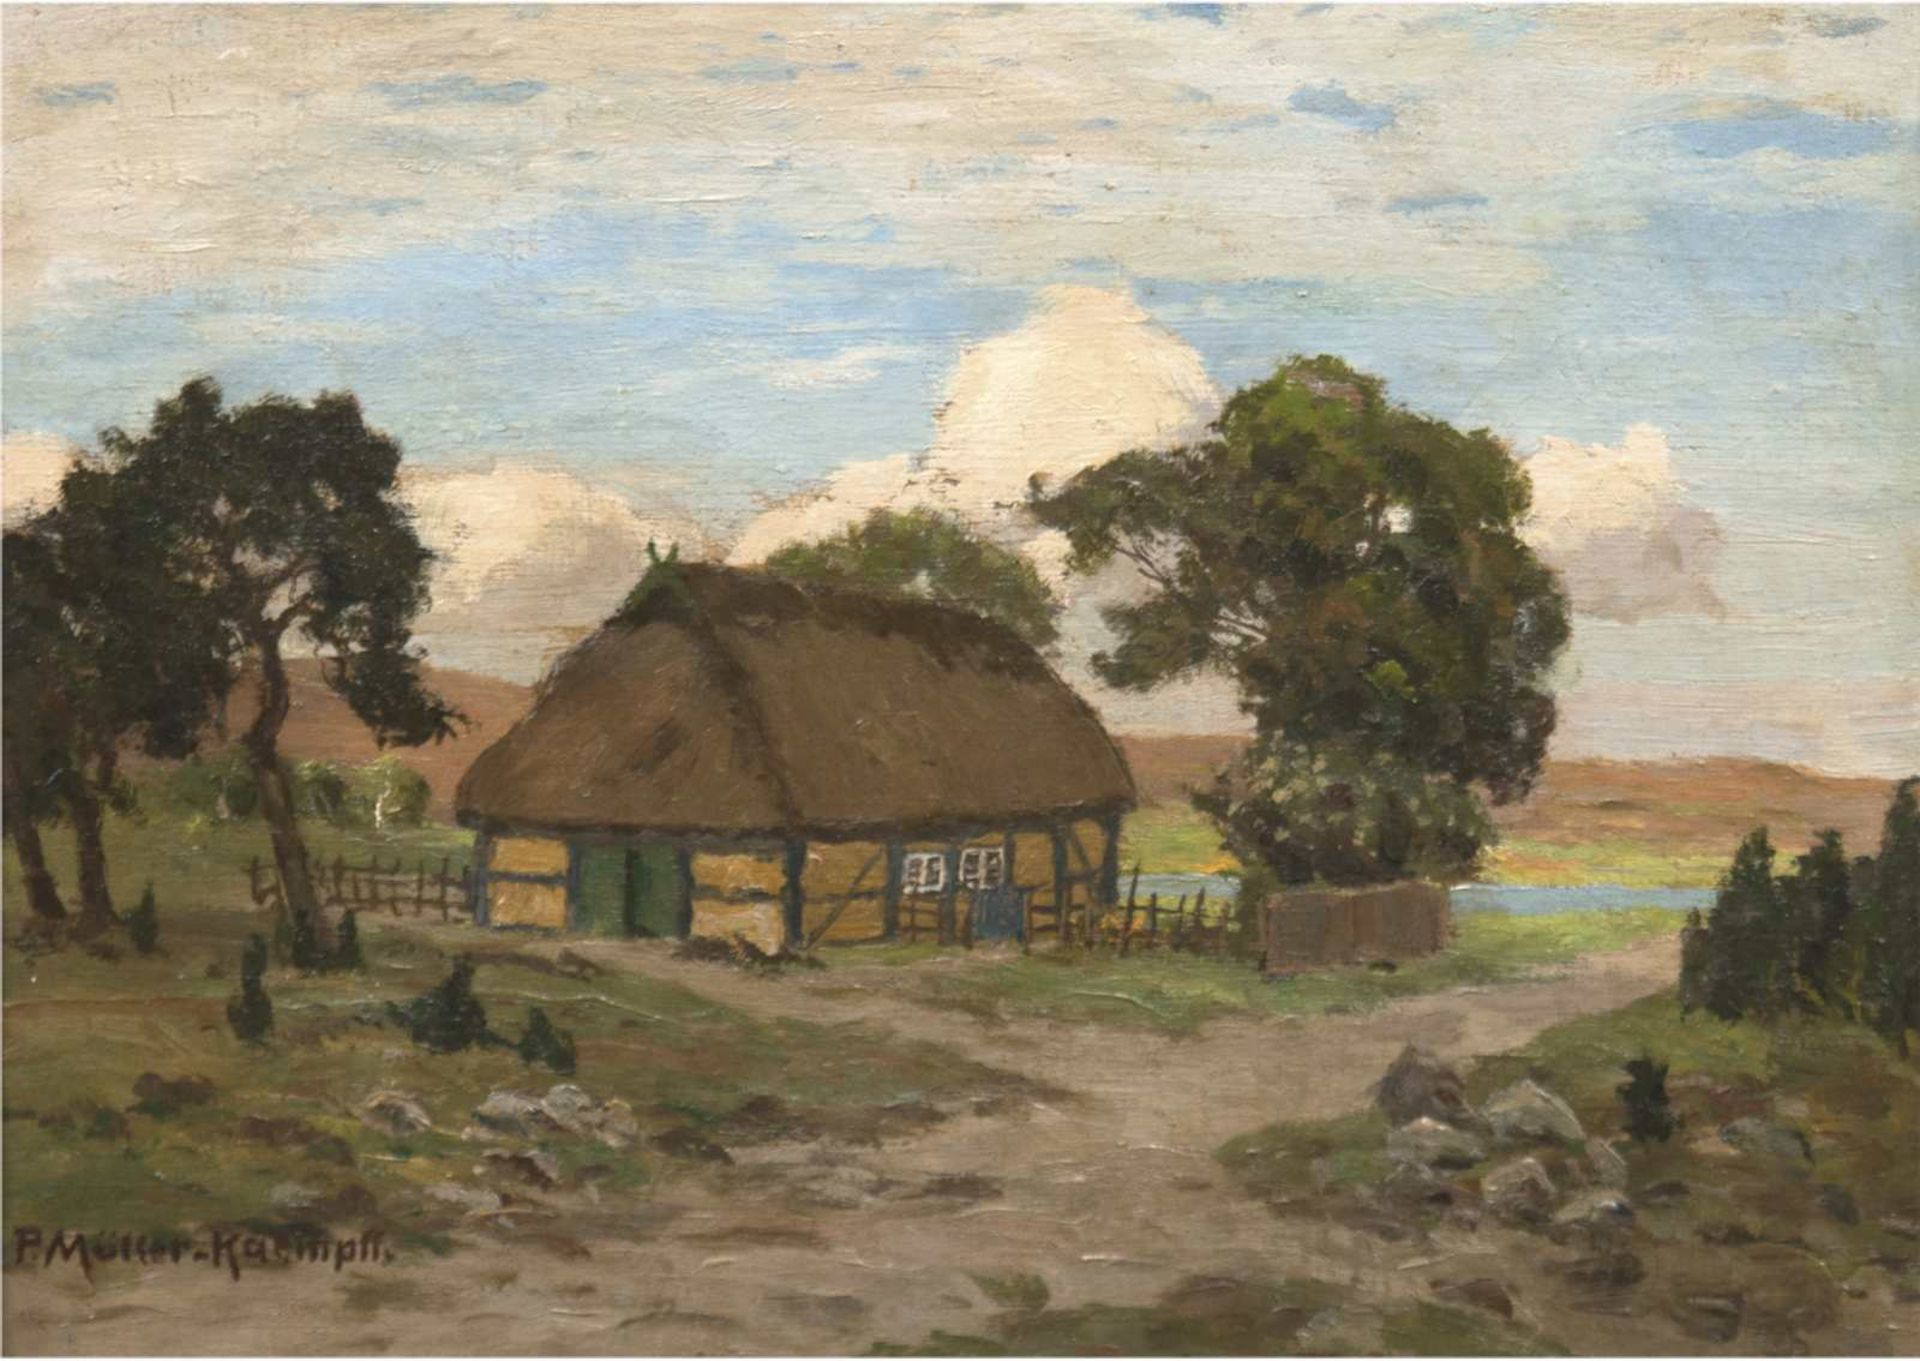 Müller-Kaempff, Paul (1861 Oldenburg-1941 Berlin) "Norddeutsche Landschaft mitReetdachhaus",